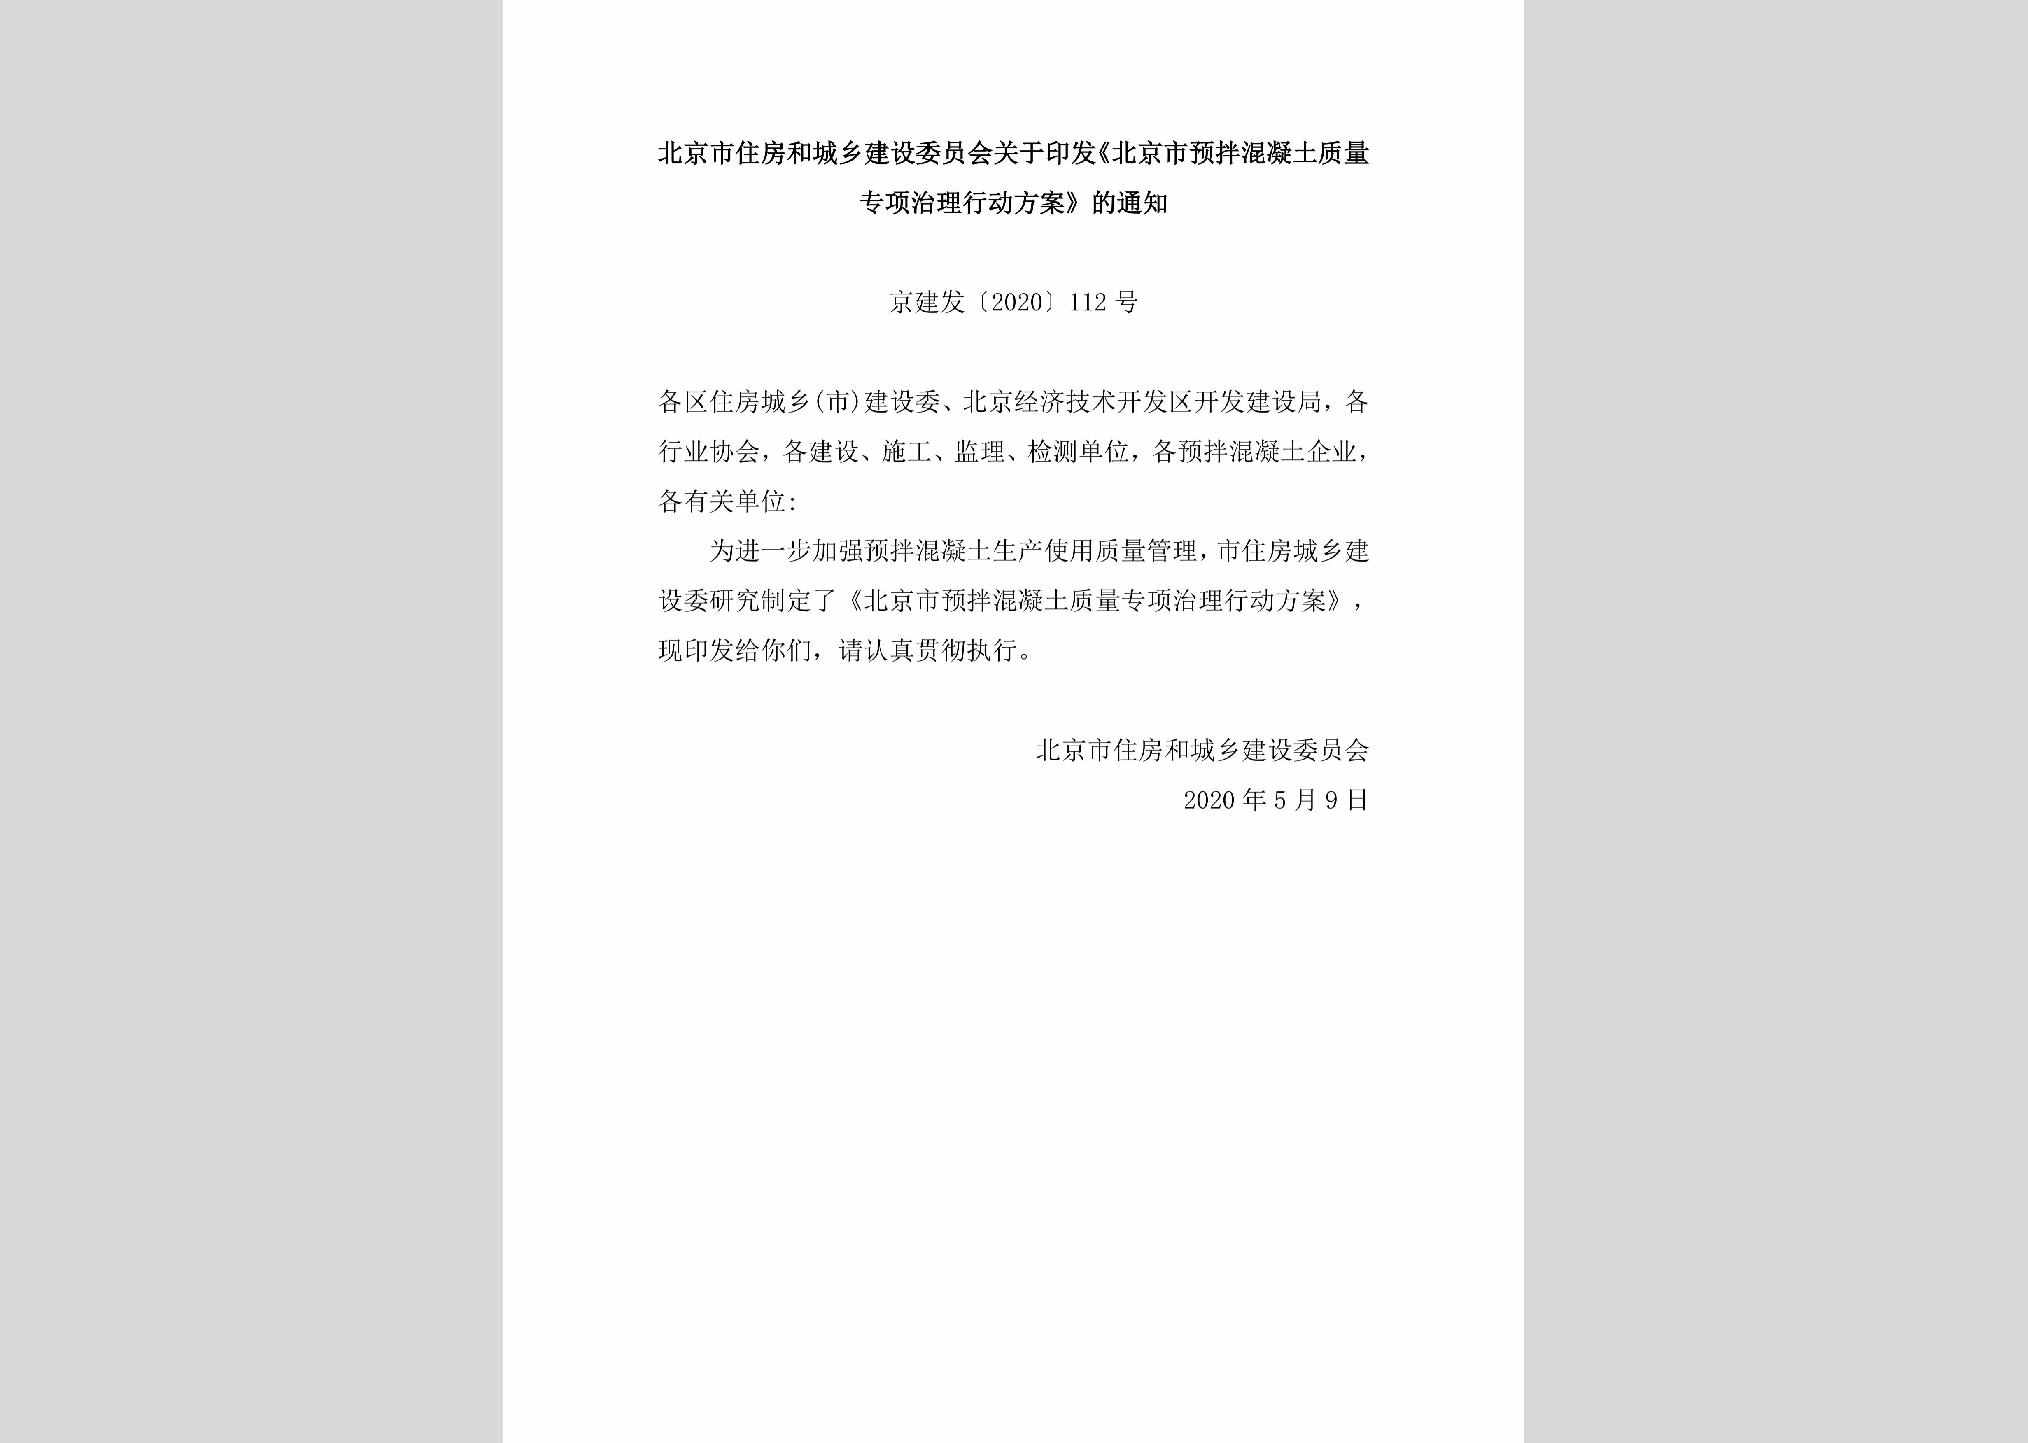 京建发[2020]112号：北京市住房和城乡建设委员会关于印发《北京市预拌混凝土质量专项治理行动方案》的通知